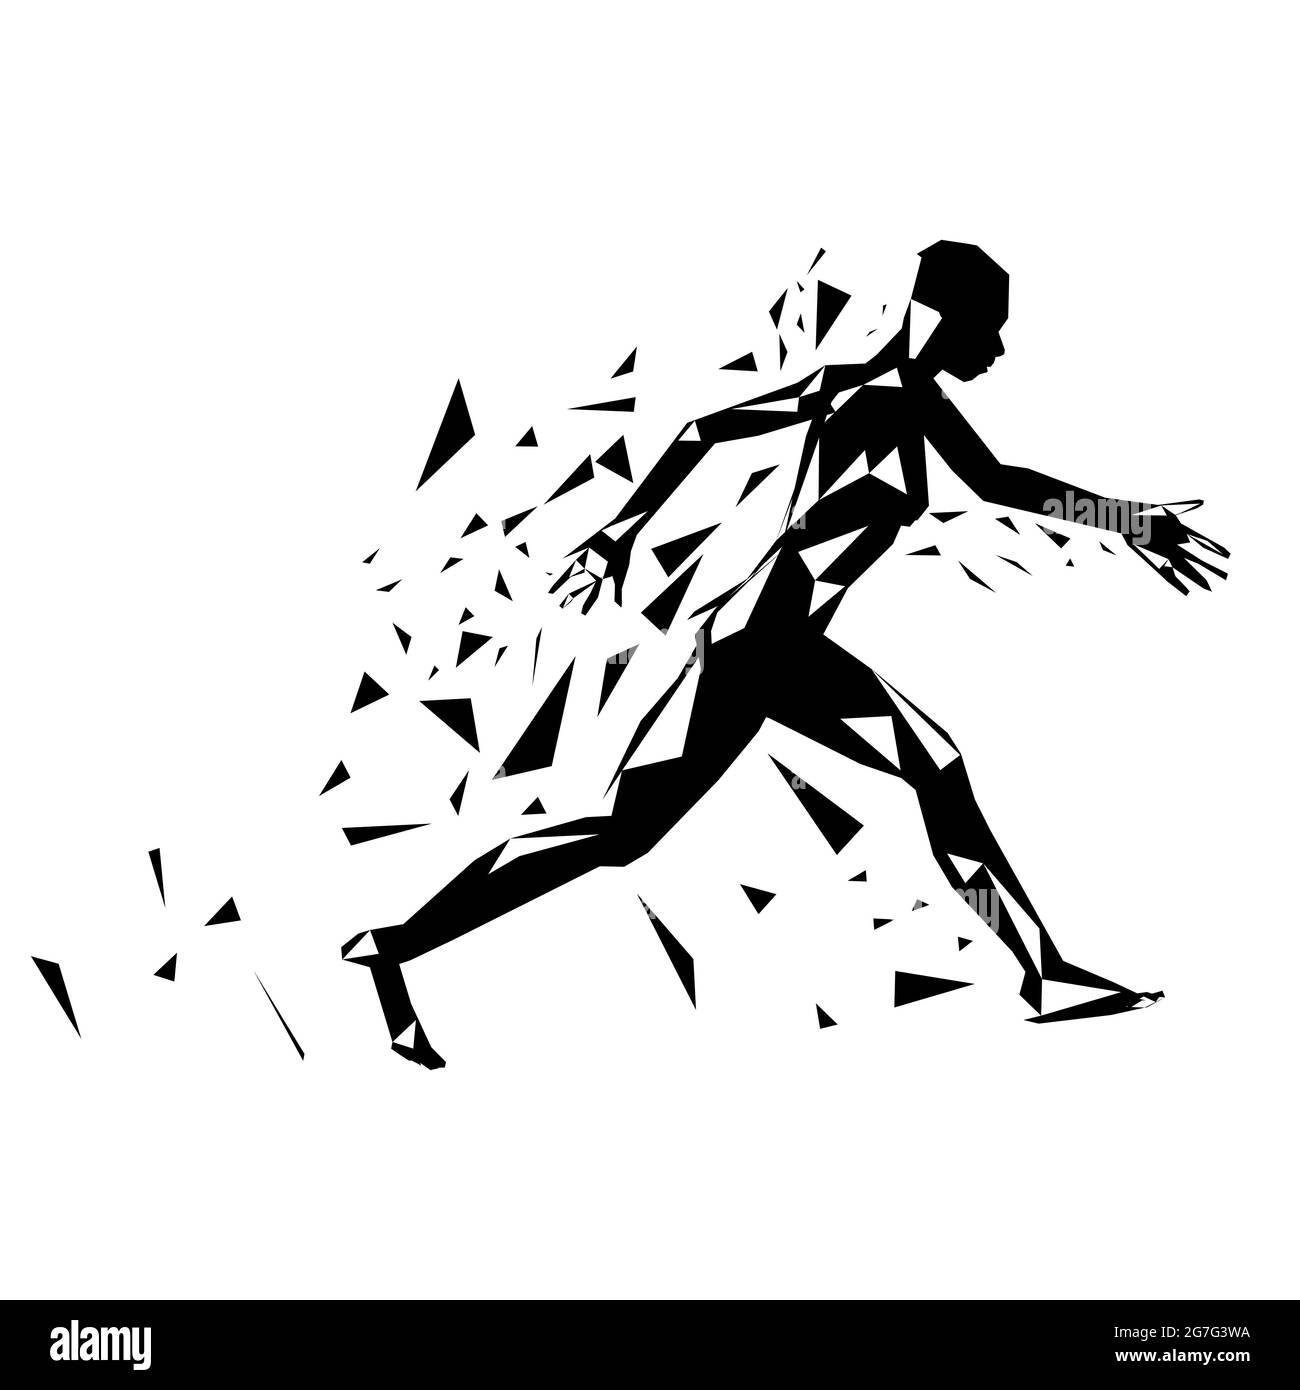 Abstrakte Silhouette eines laufenden Mannes, der auf weißem Hintergrund isoliert in Stücke gerissen wurde. Vektorgrafik. Stock Vektor